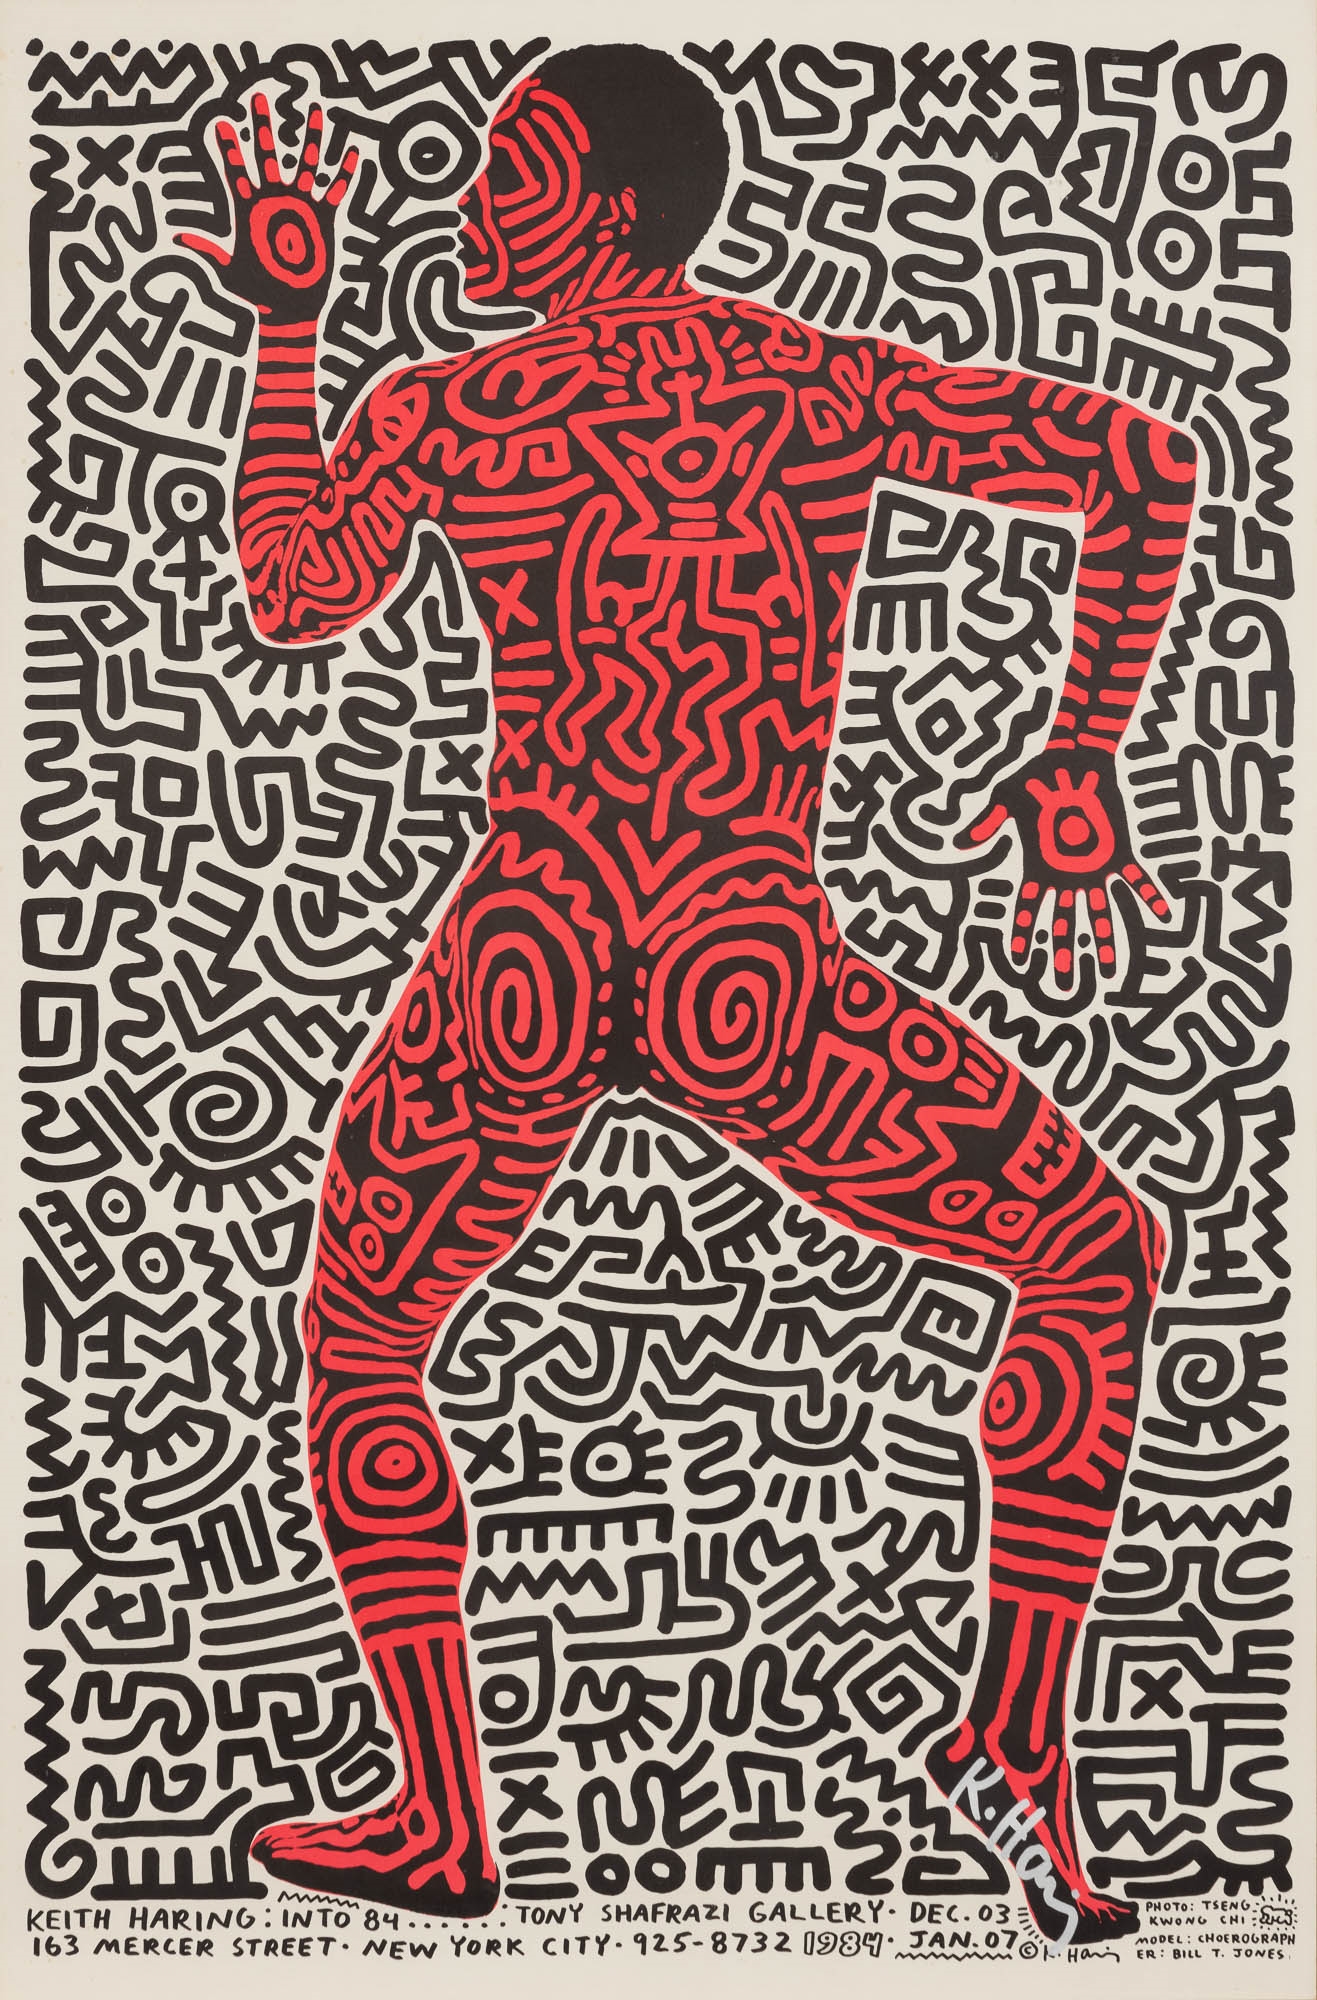 Keith Haring (1958-1990 - Keith Haring